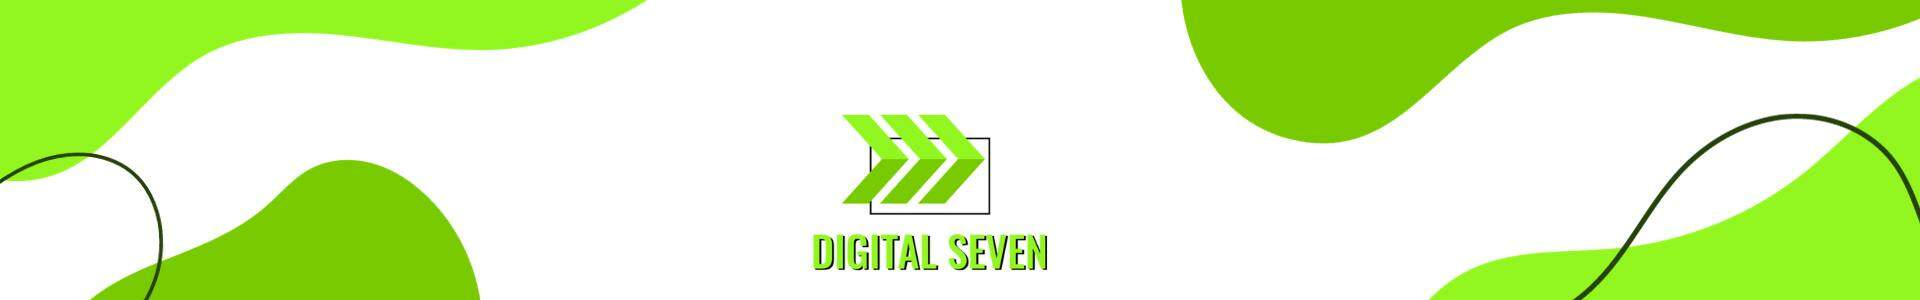 Marca Digital Seven